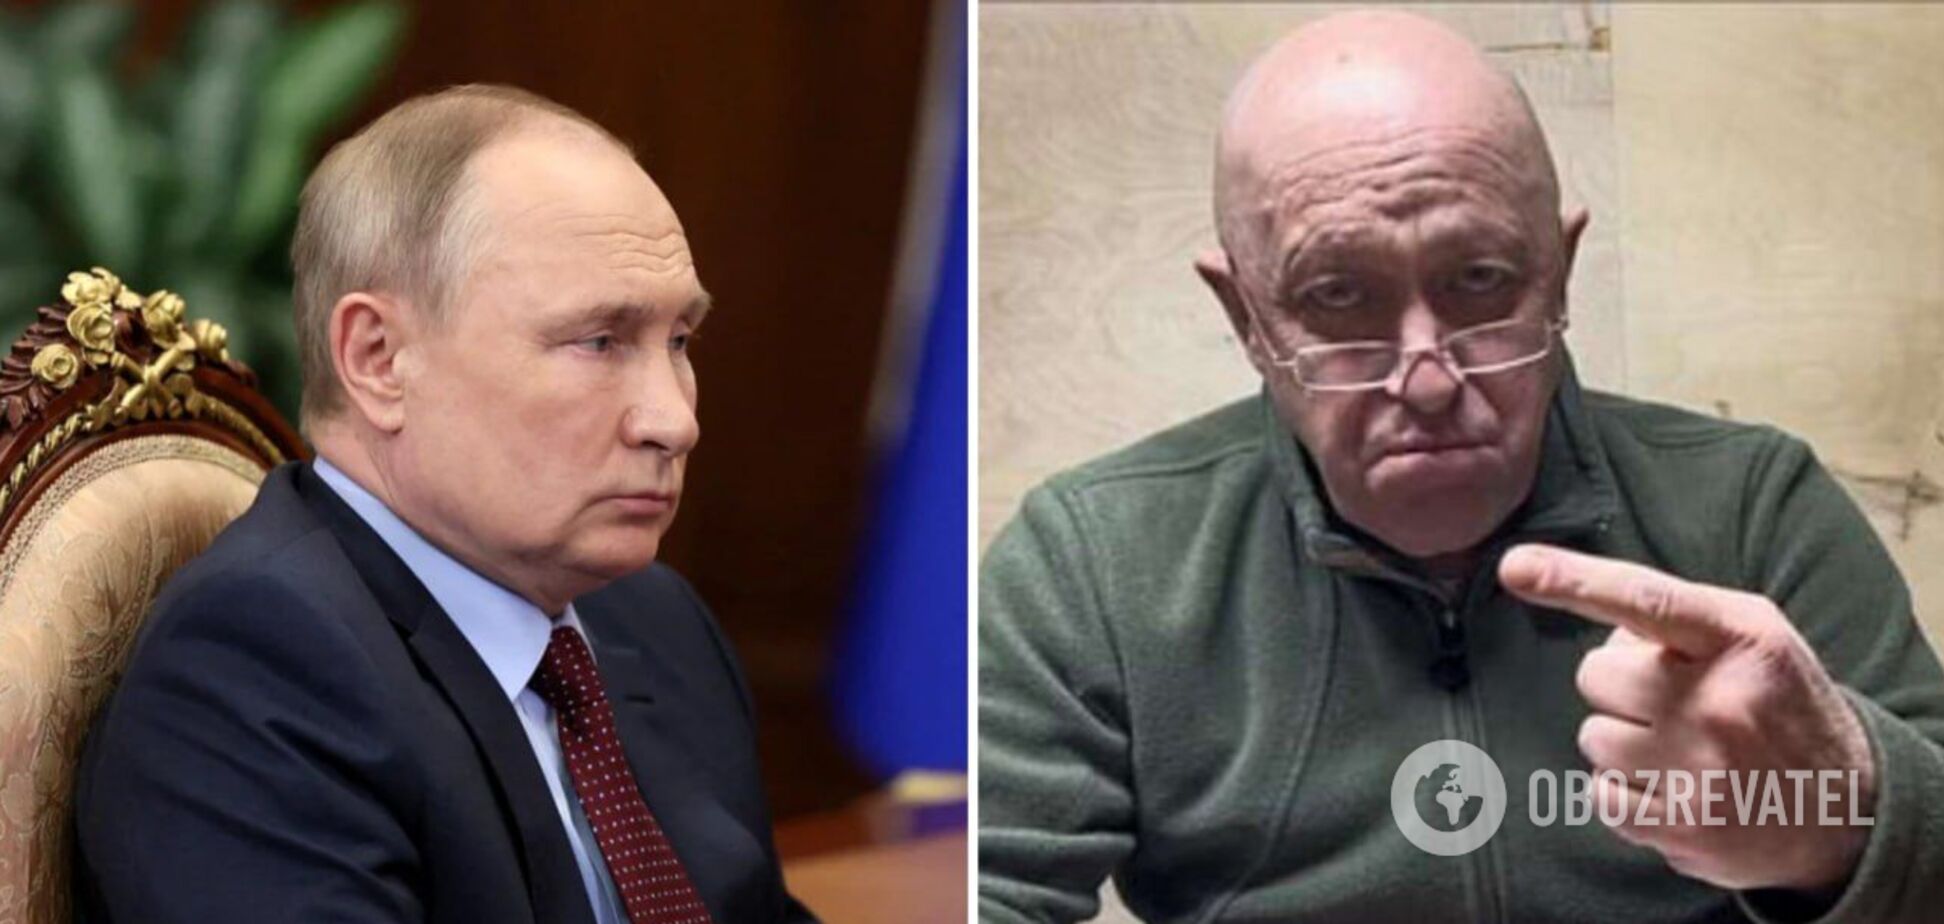 Пригожин не выходит на связь после 'перемирия' с Путиным: что известно СМИ